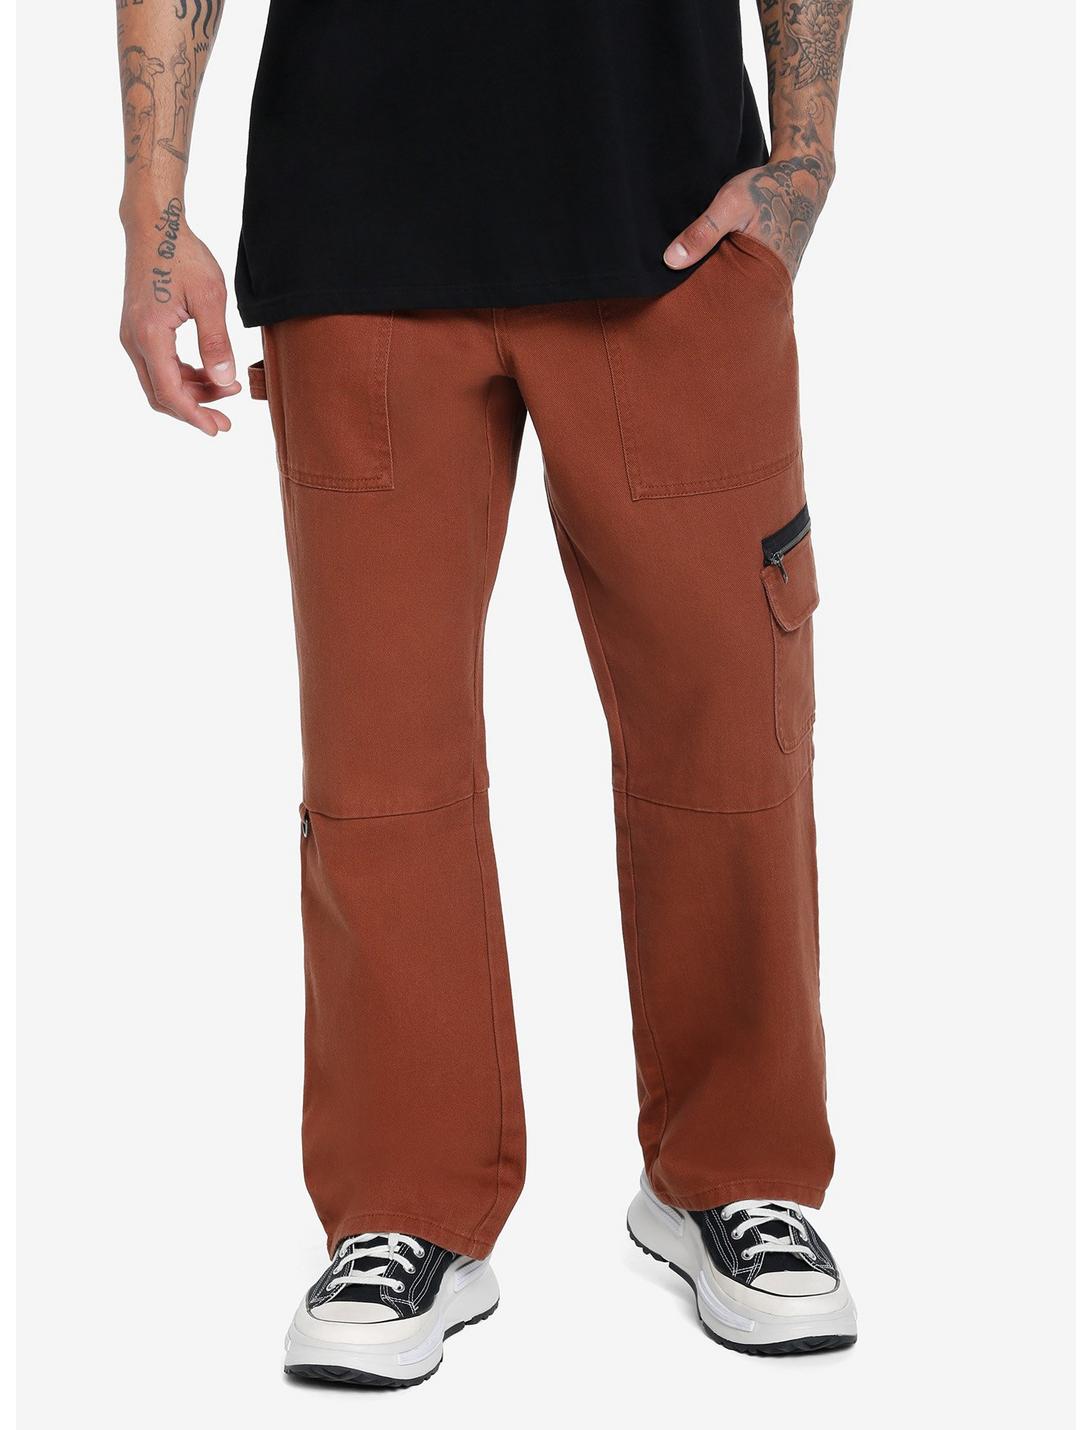 Brown Ankle Zipper Carpenter Pants, BROWN, hi-res